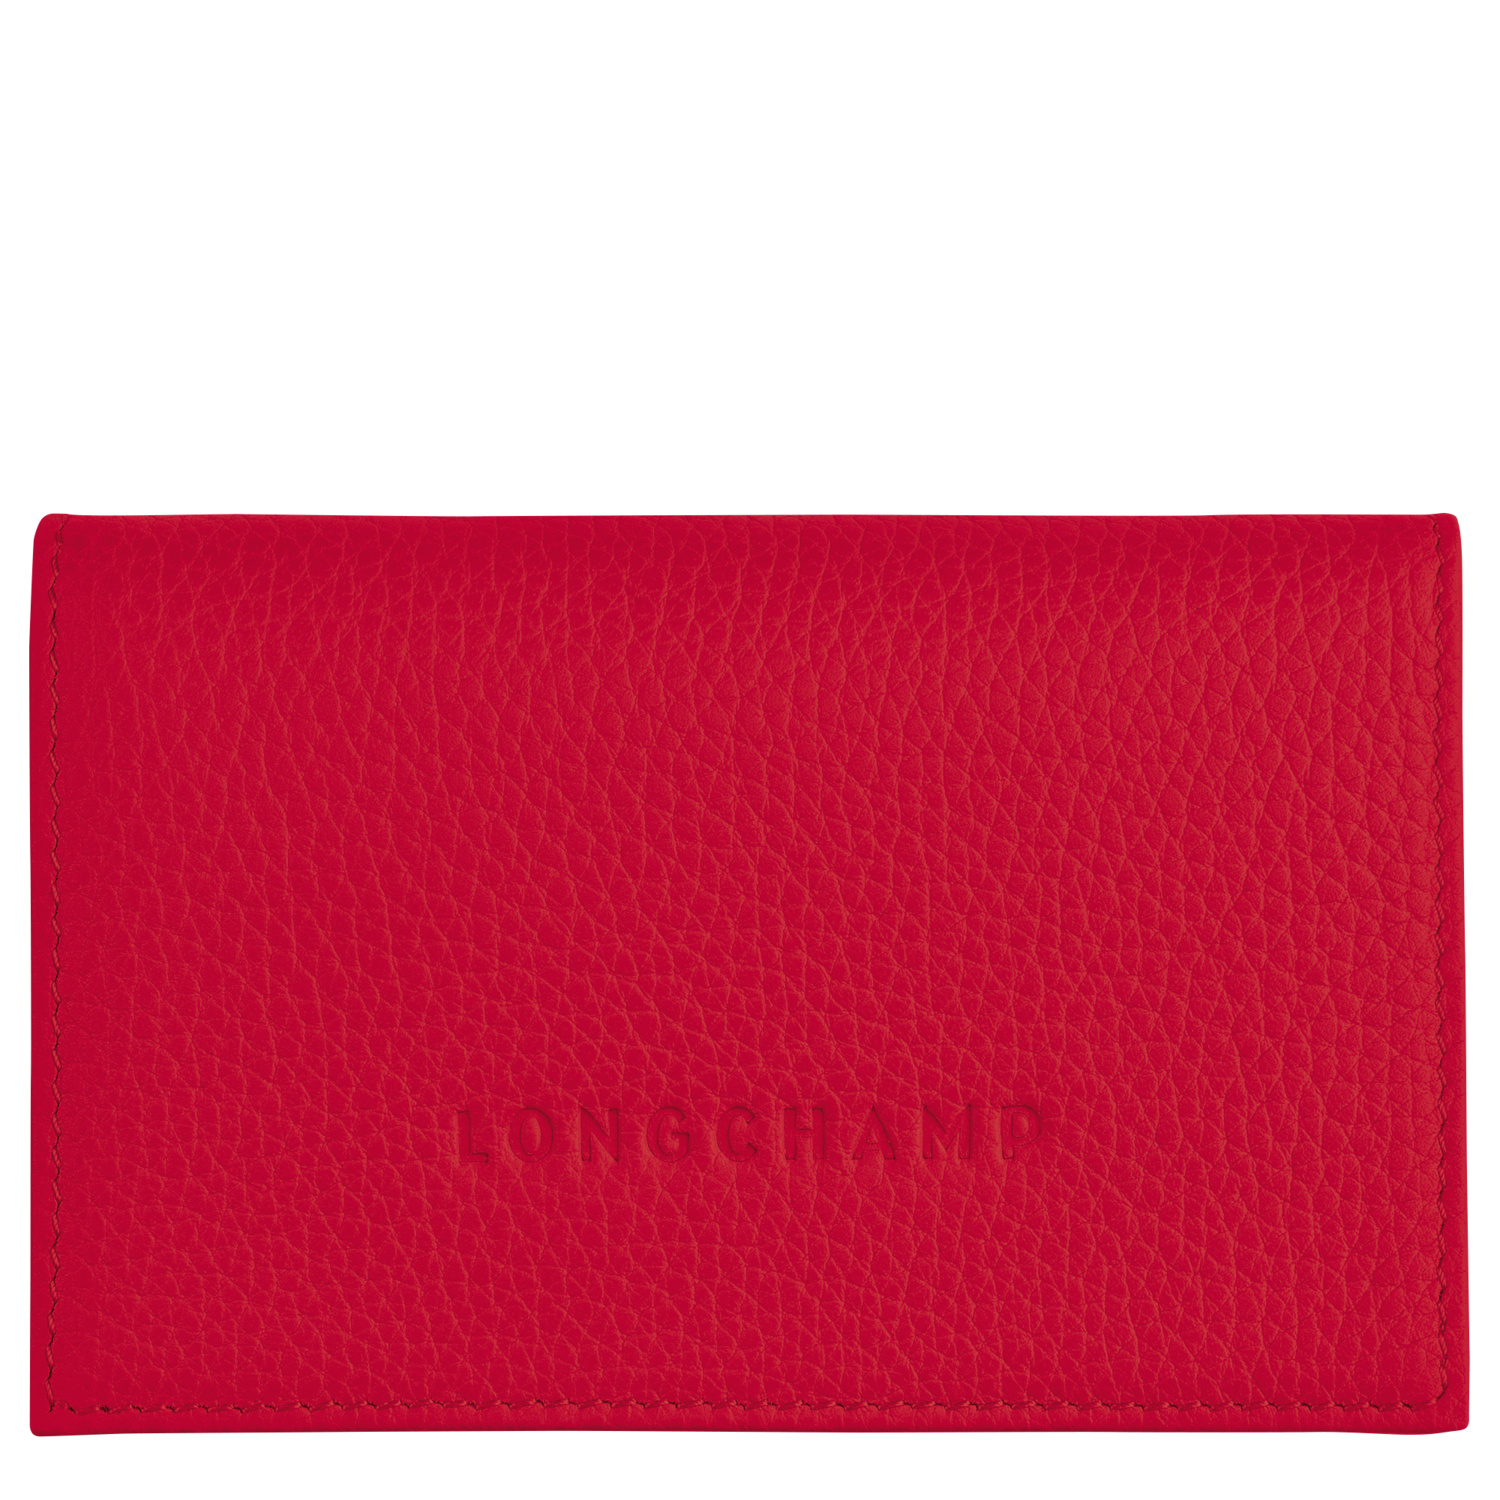 Longchamp Porte-cartes Le Foulonné In Love